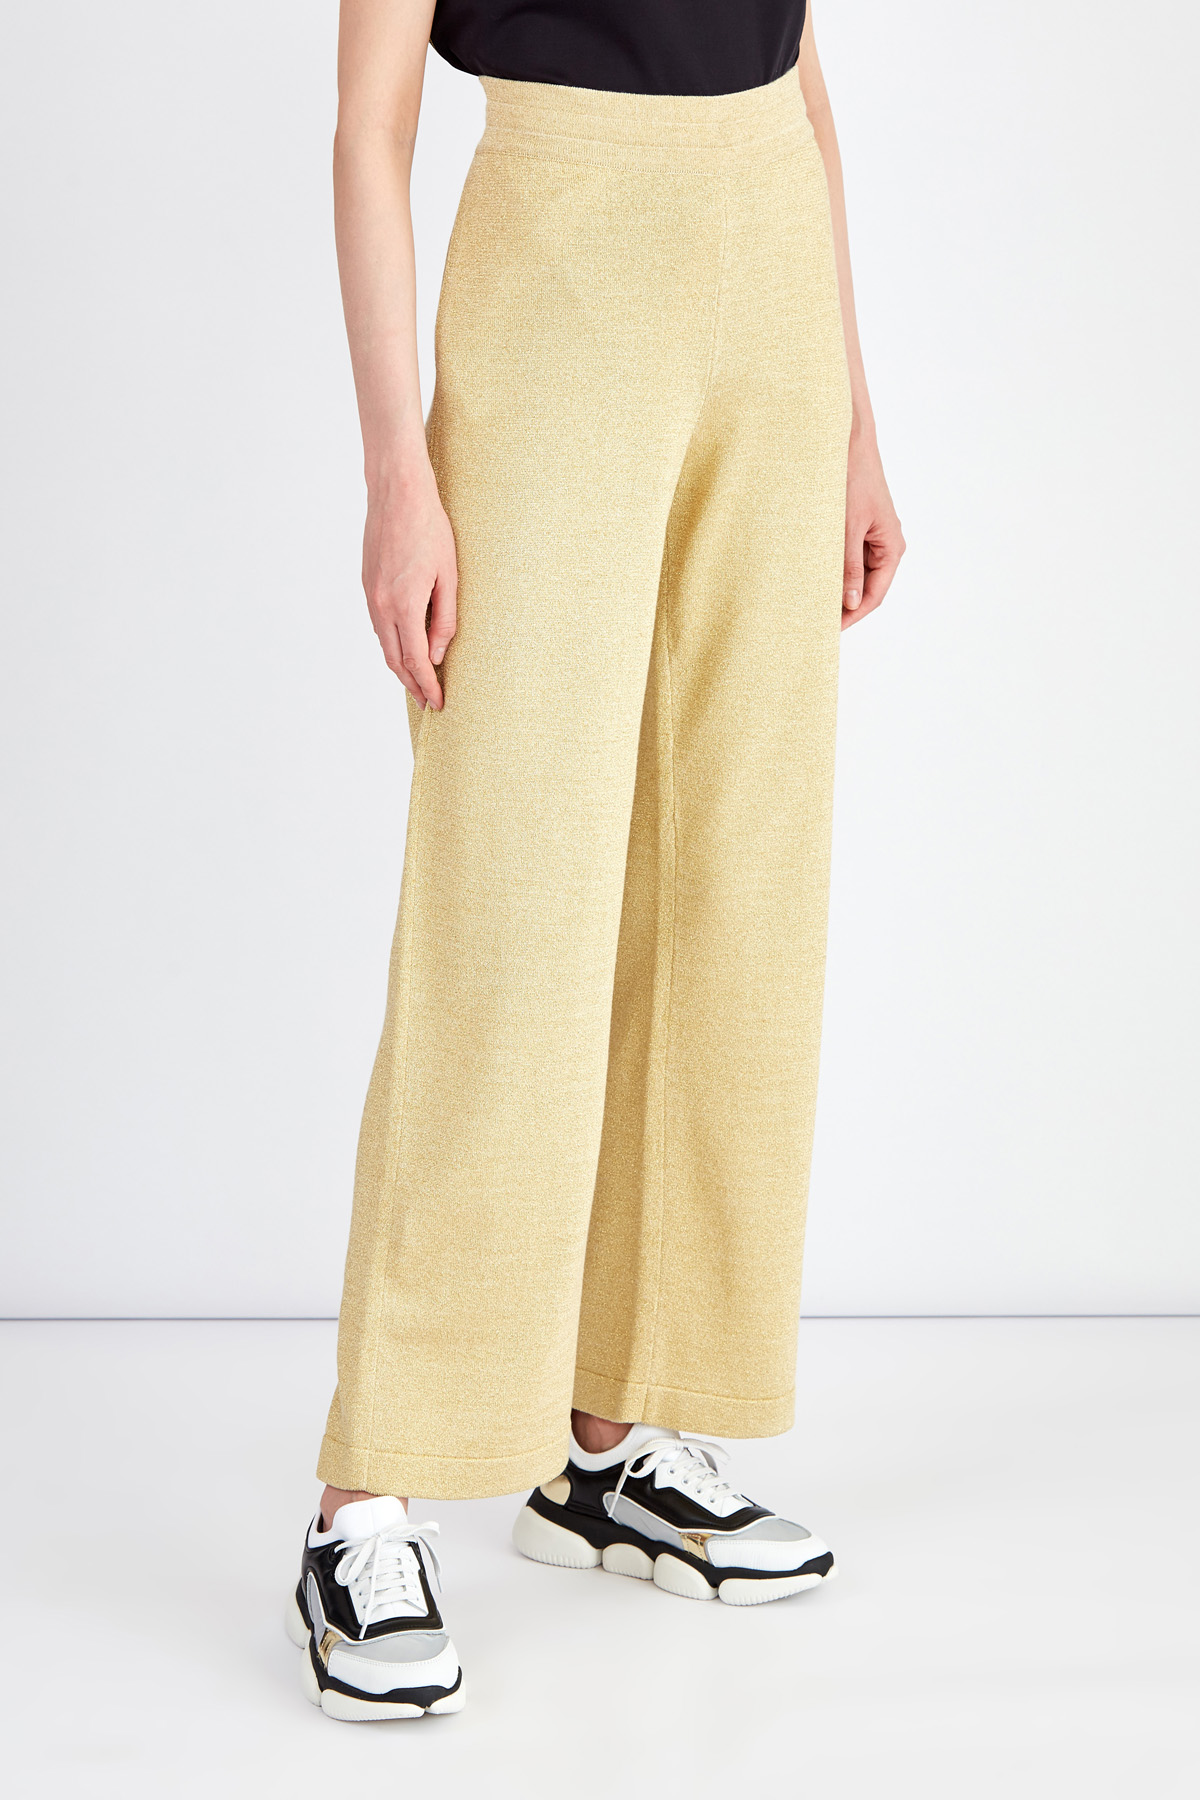 Широкие брюки из мерцающей пряжи с люрексом золотистого цвета MONCLER, размер 42 - фото 3